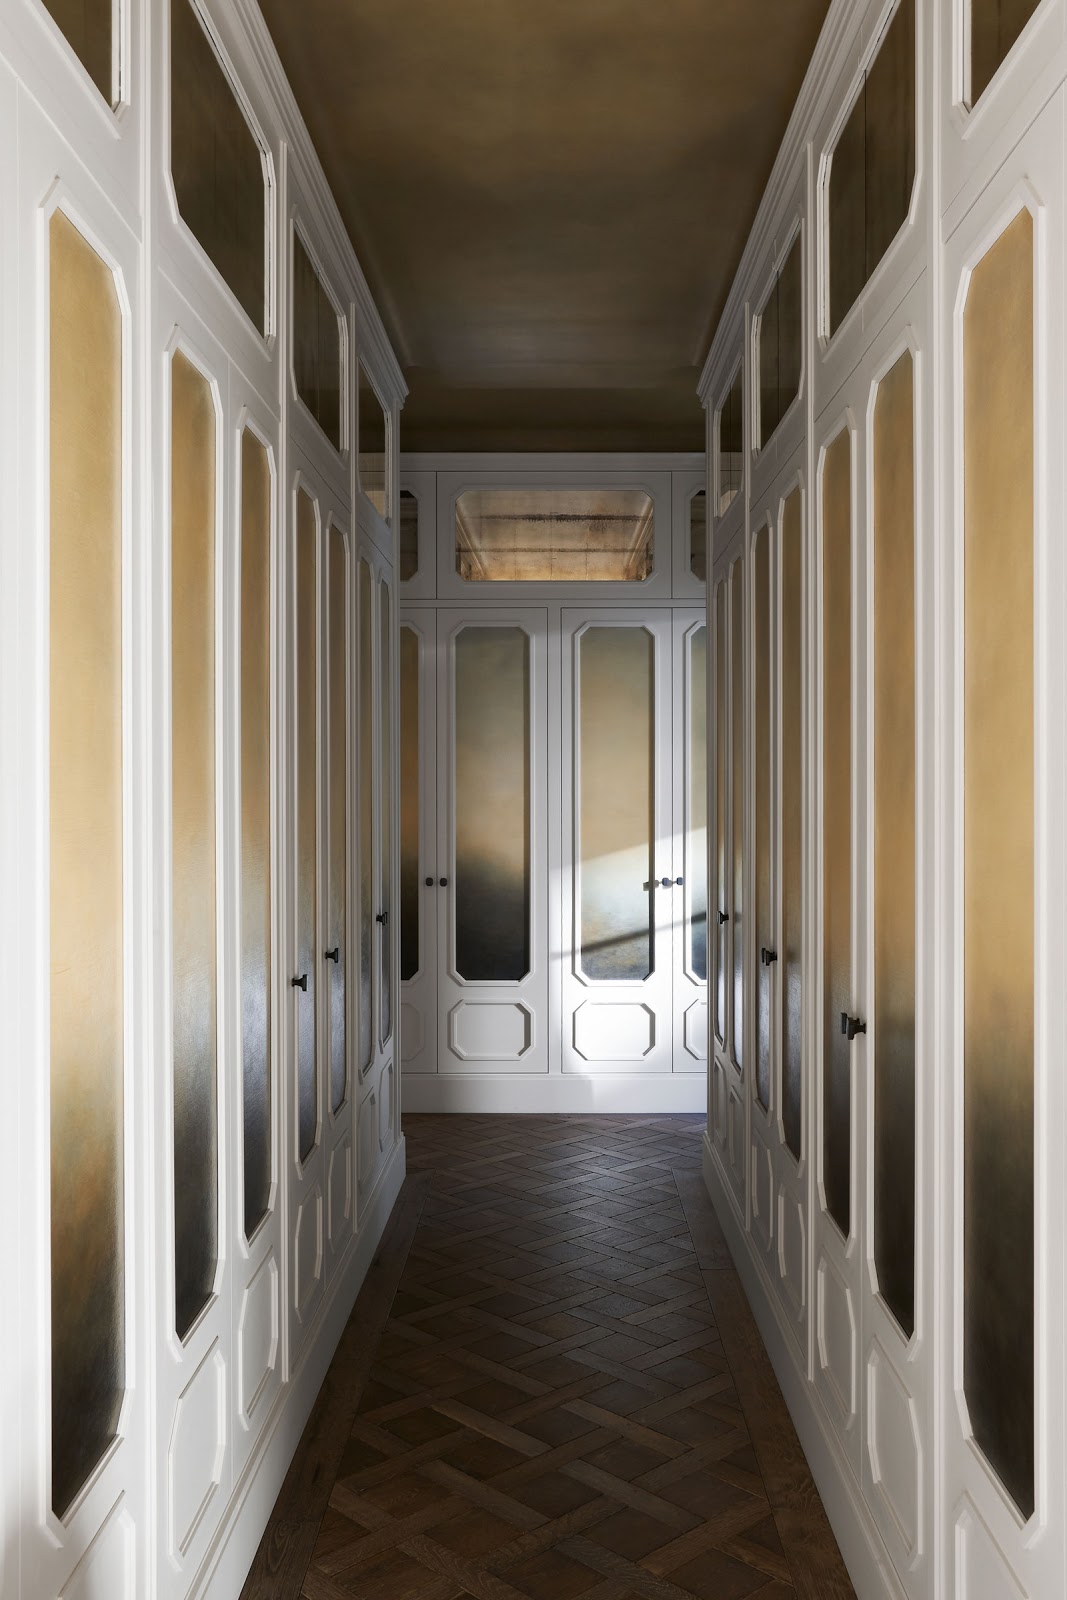 Décor Inspiration: Joseph Dirand’s New Paris Apartment